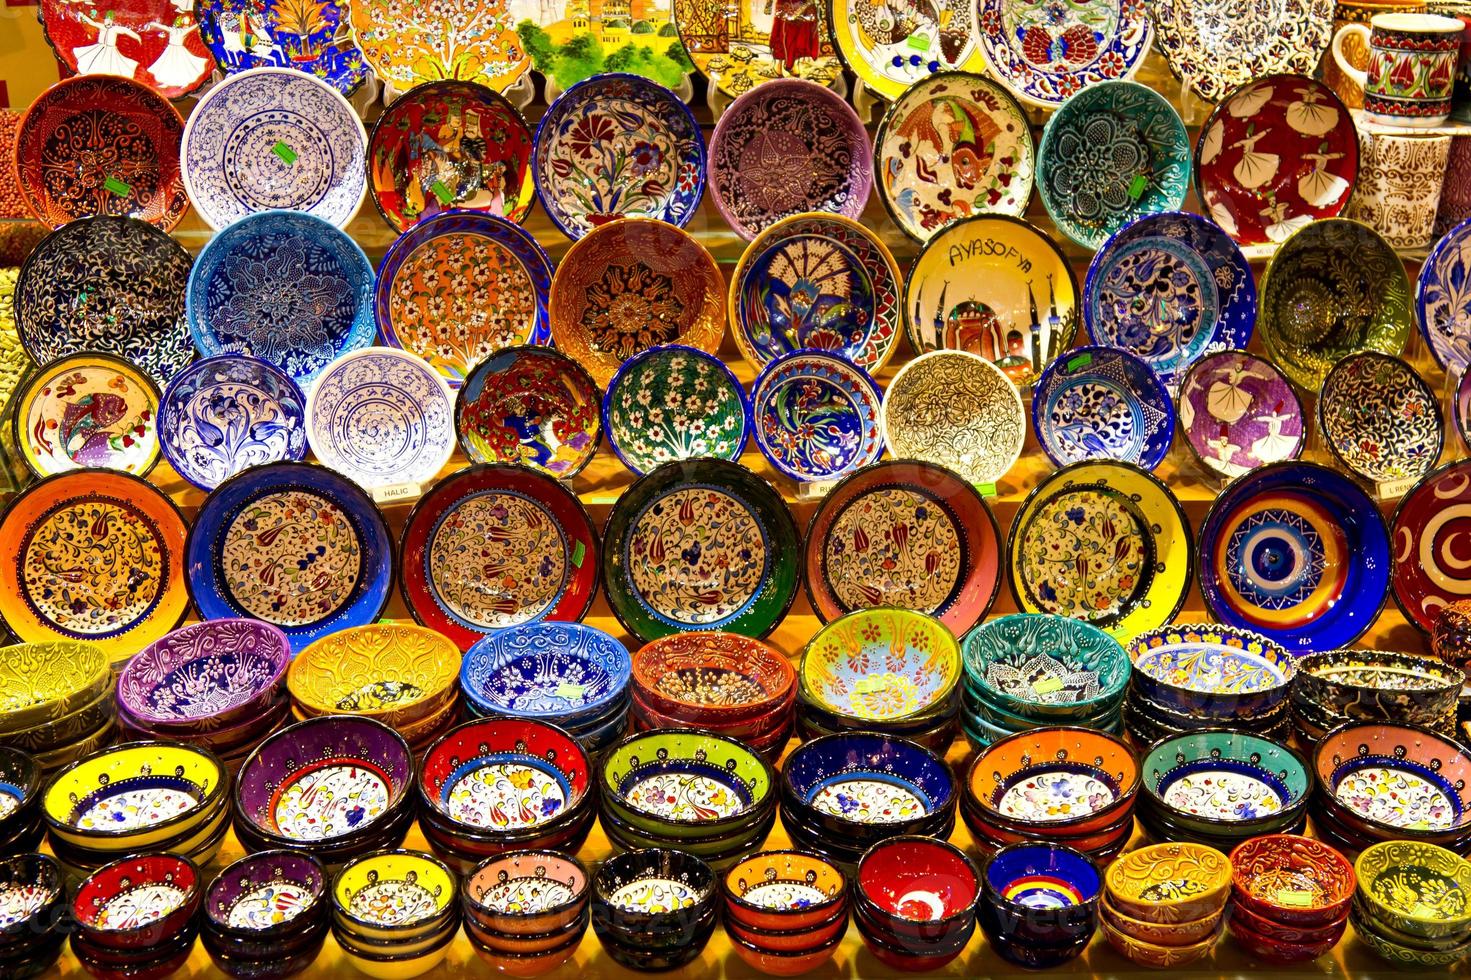 cerámica turca del bazar de las especias, estambul foto